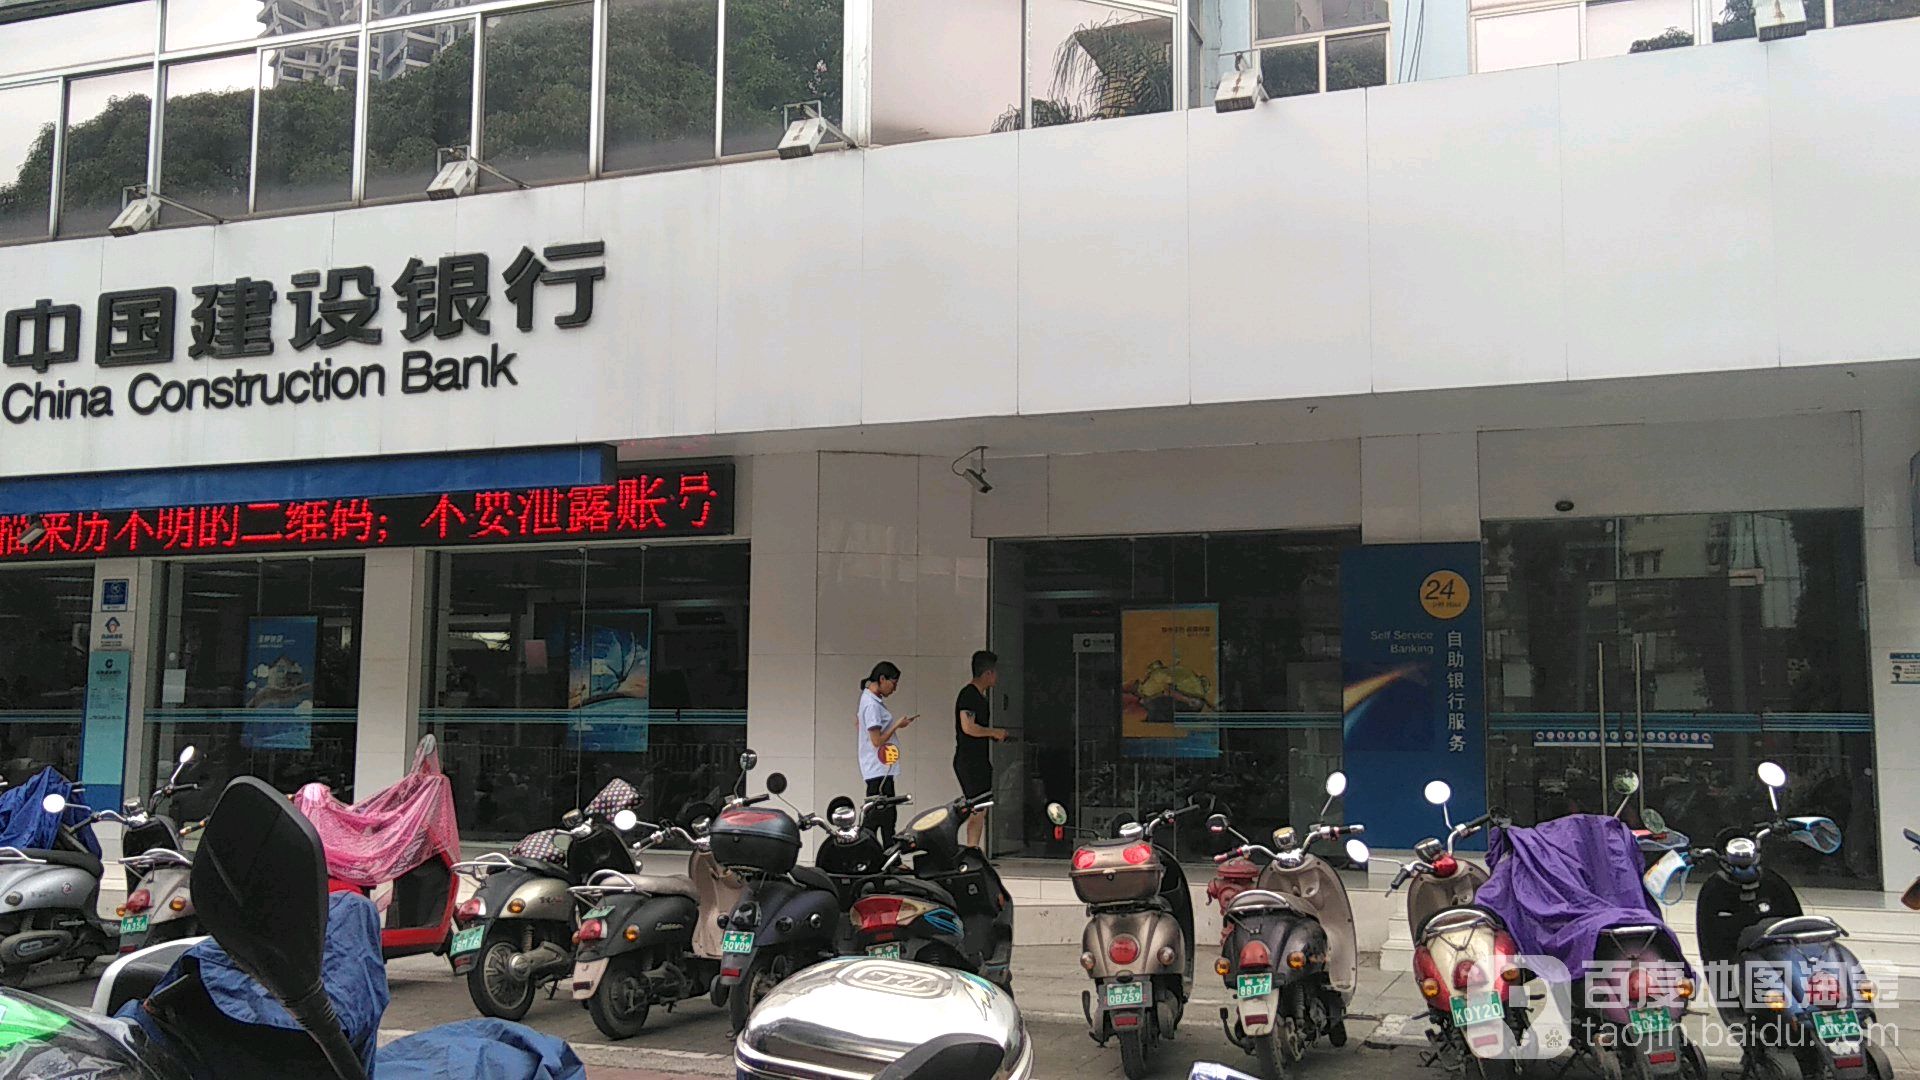 中國建設銀行24小時自助銀行(南寧江南支行)